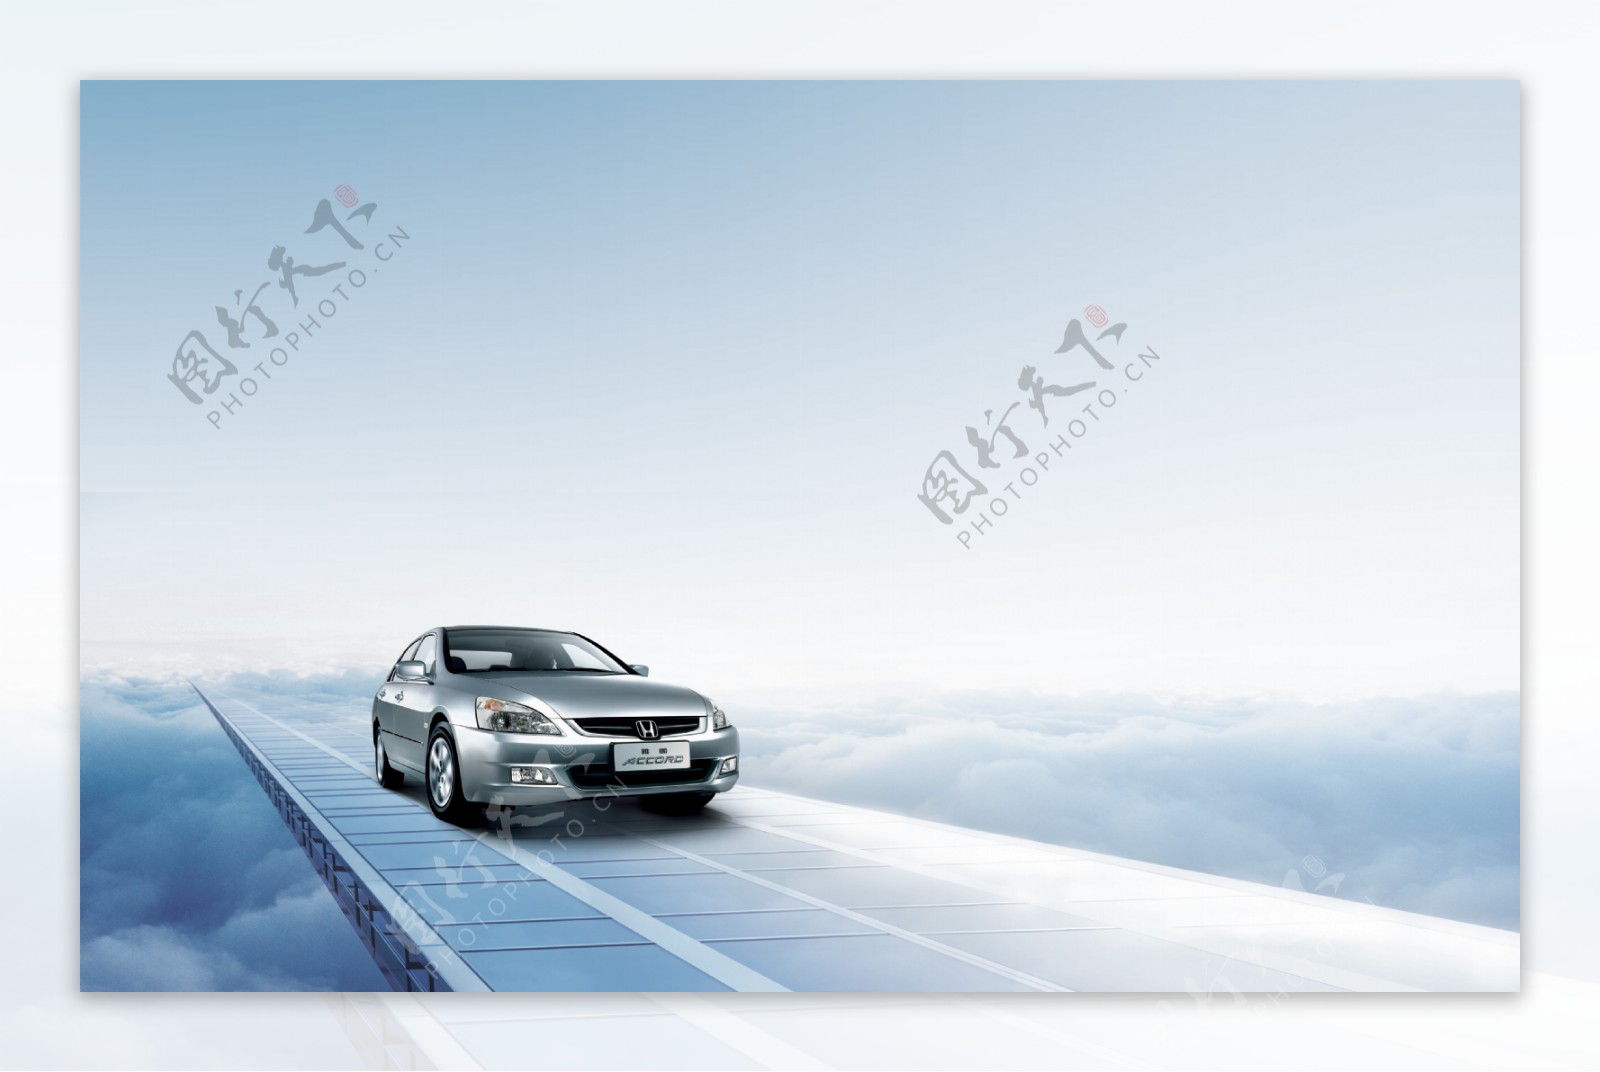 本田轿车广告图图片